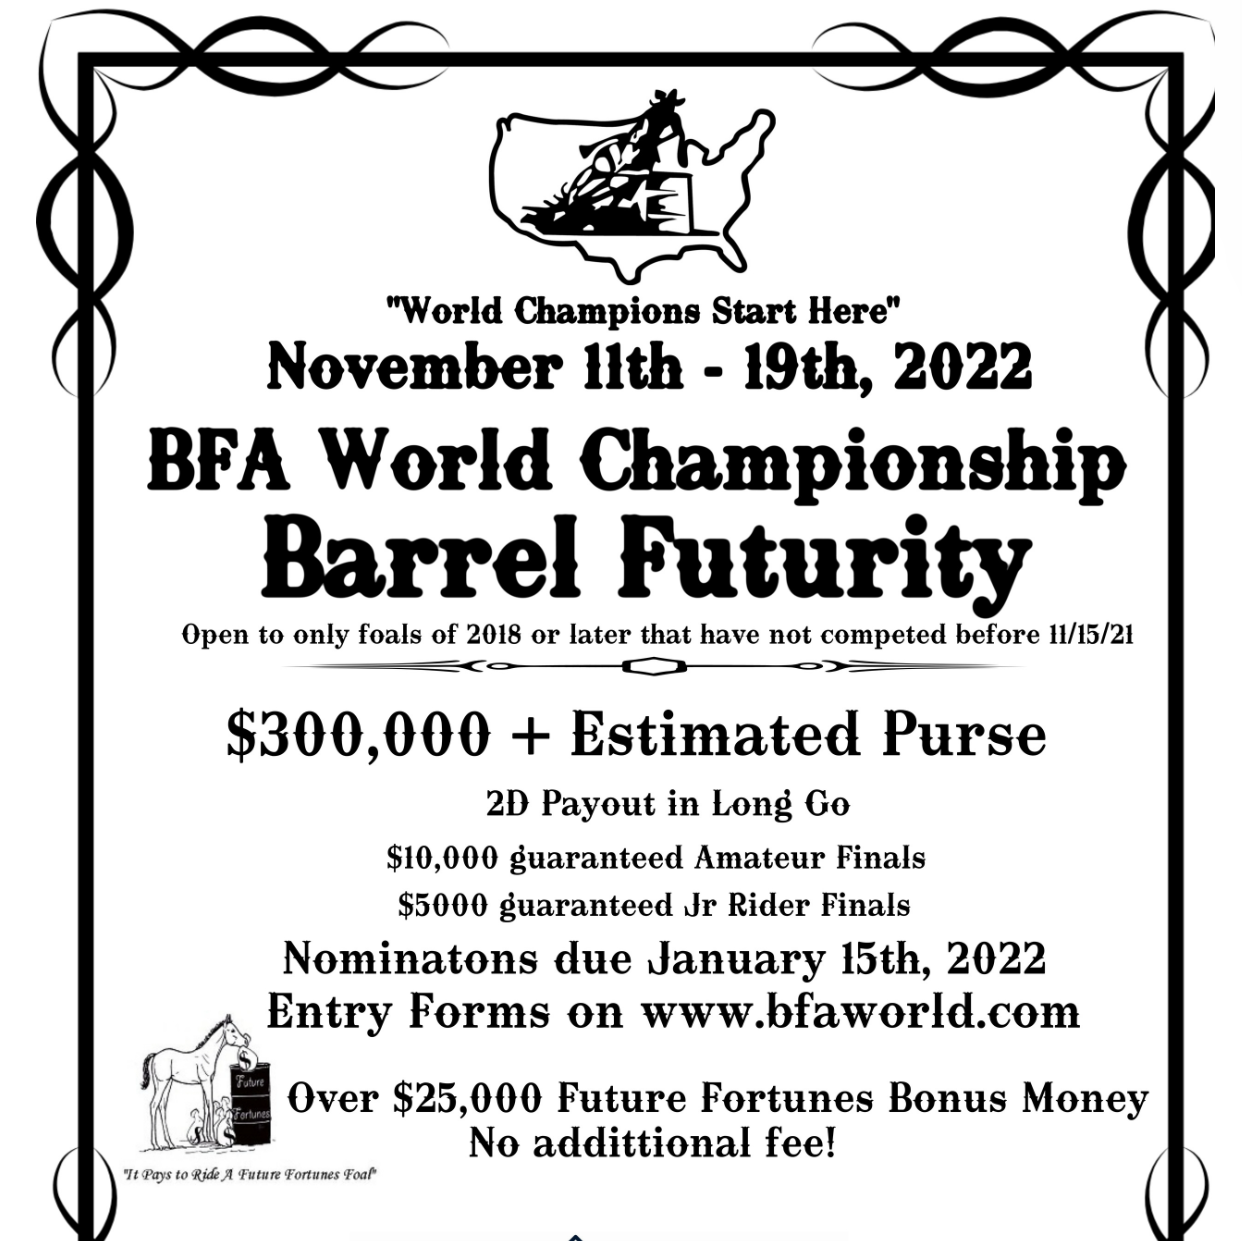 BFA World Championship Barrel Futurity